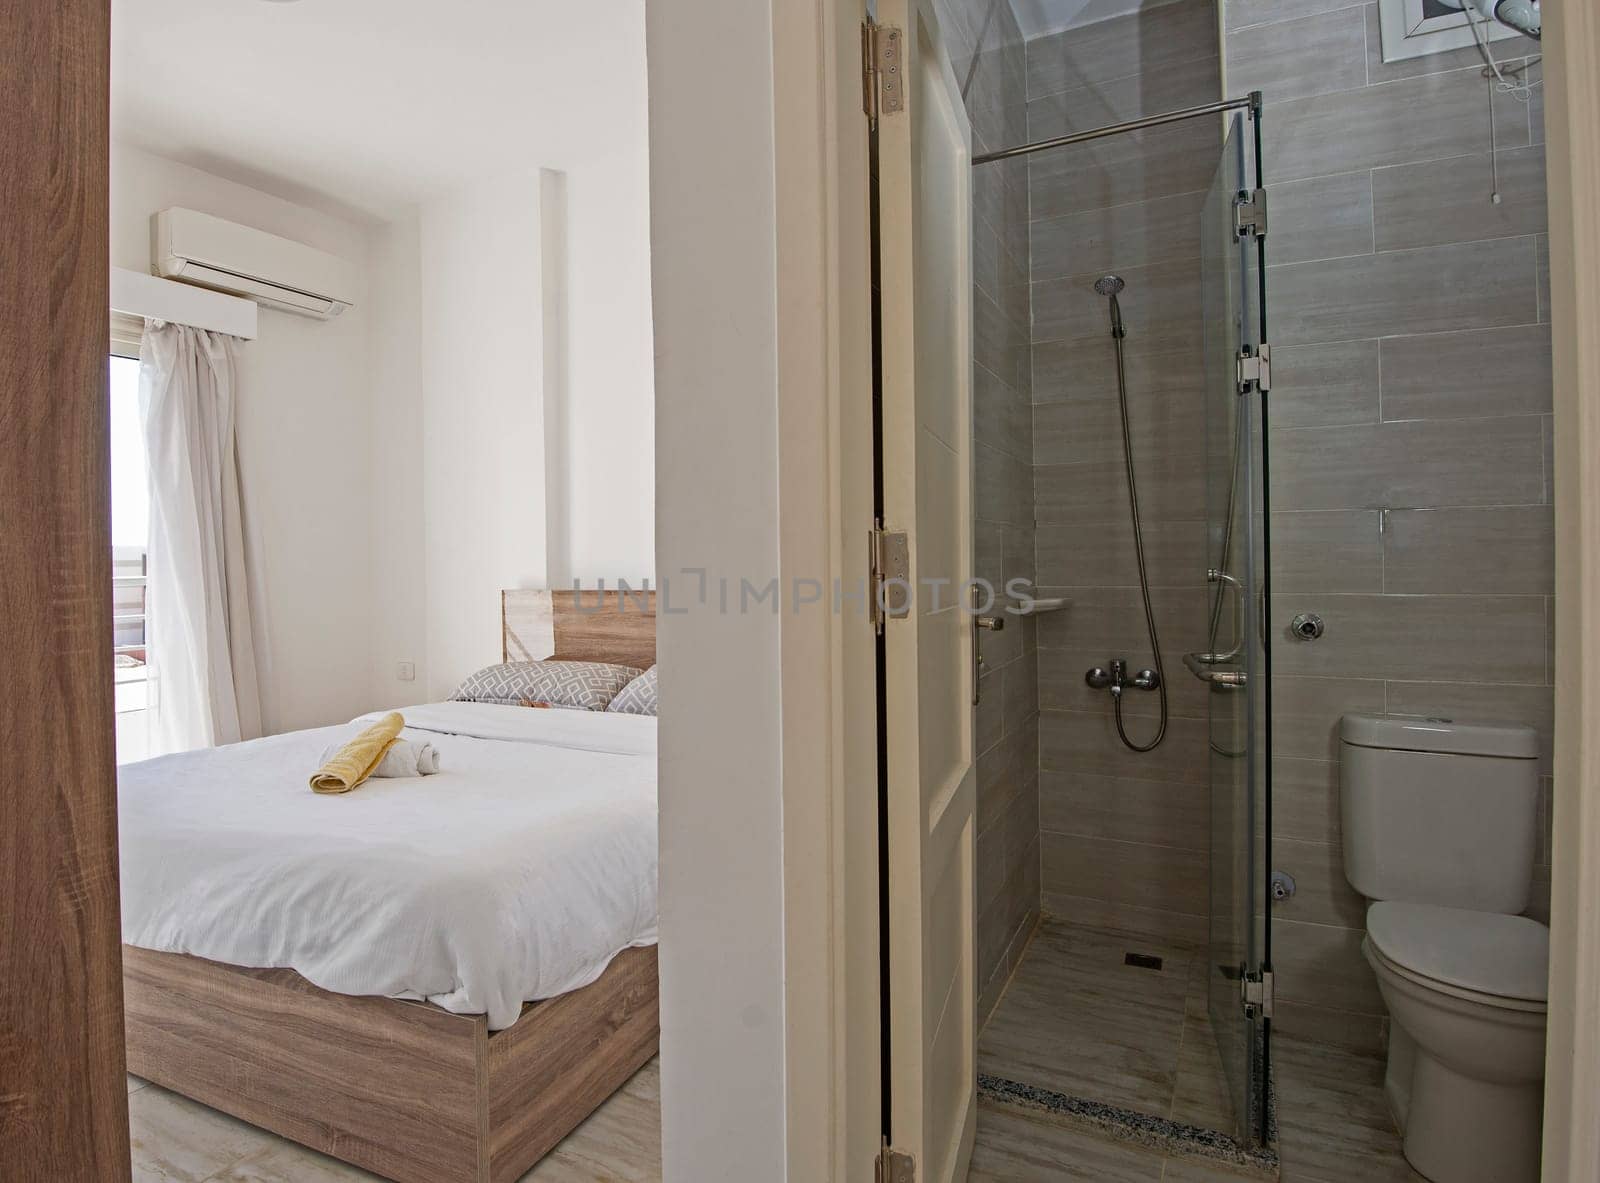 Interior design of modern en suite bedroom in apartment by paulvinten